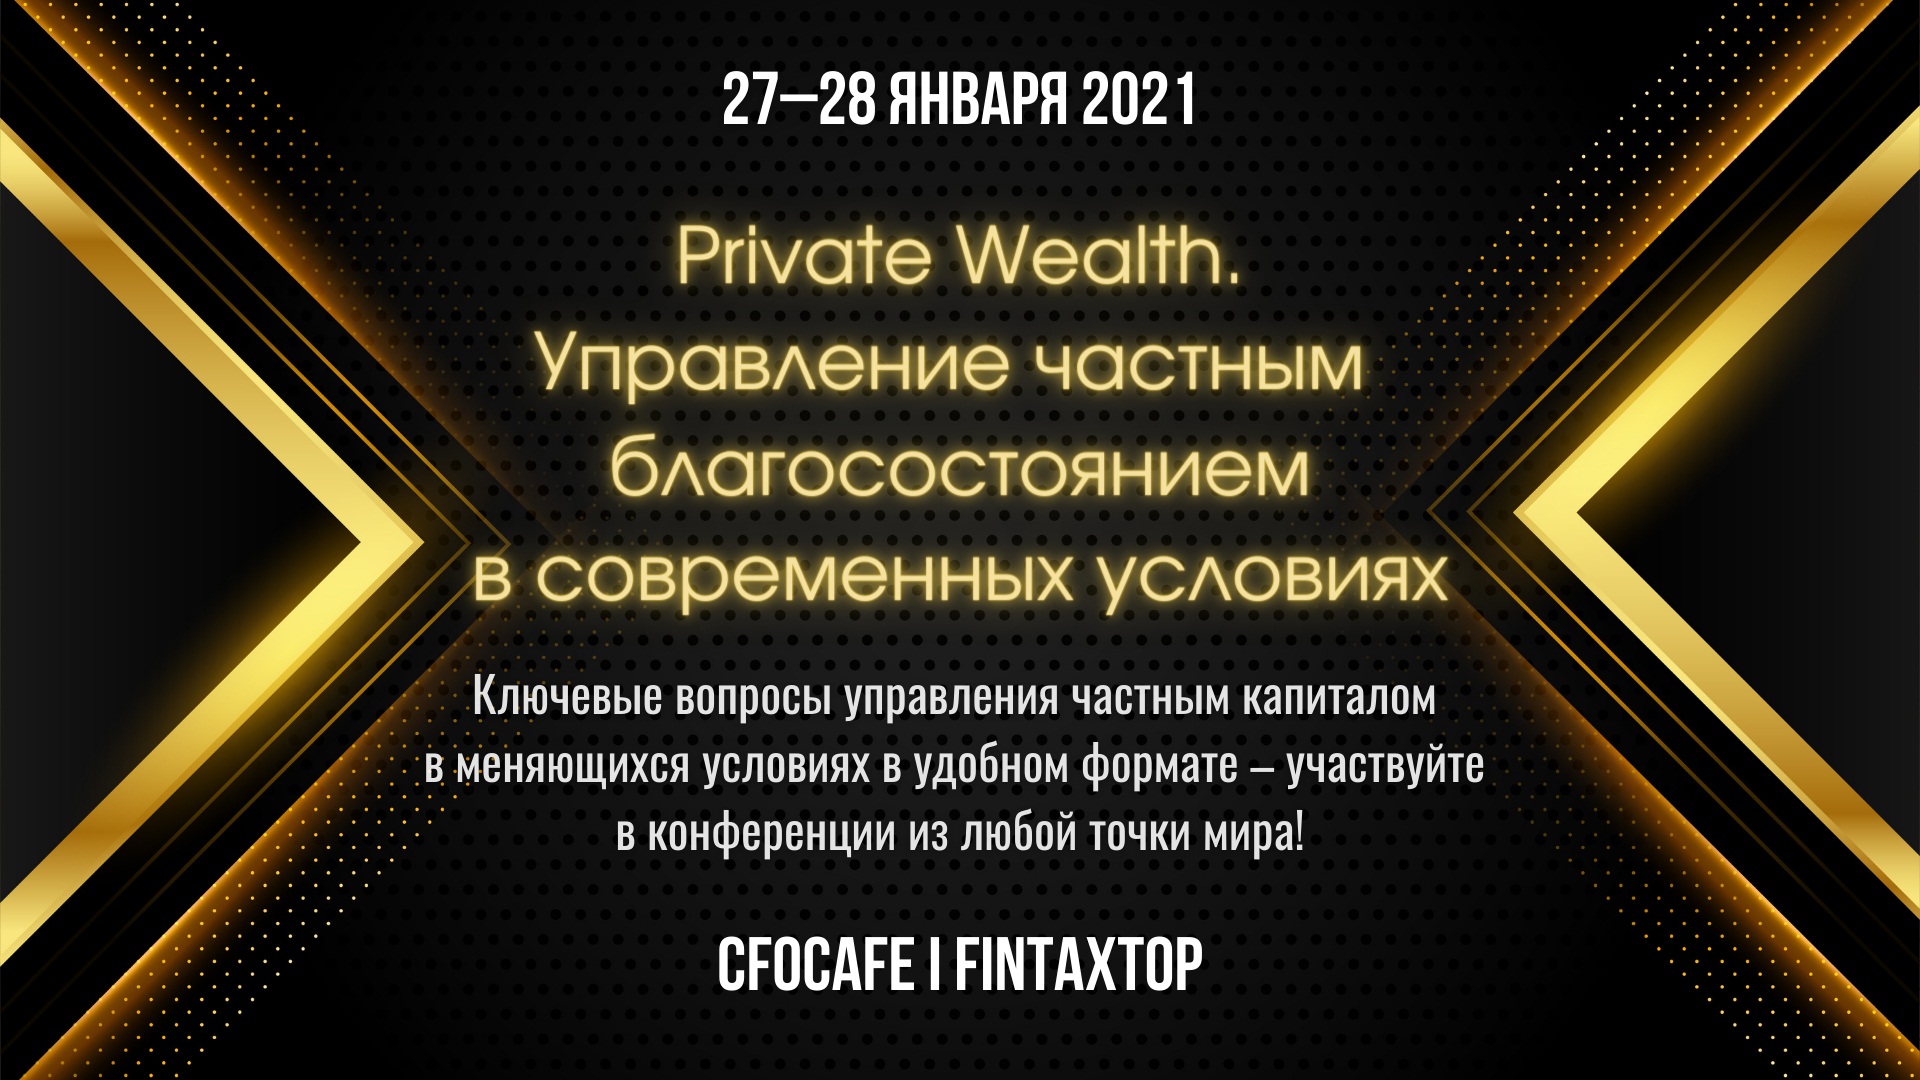 - Private Wealth